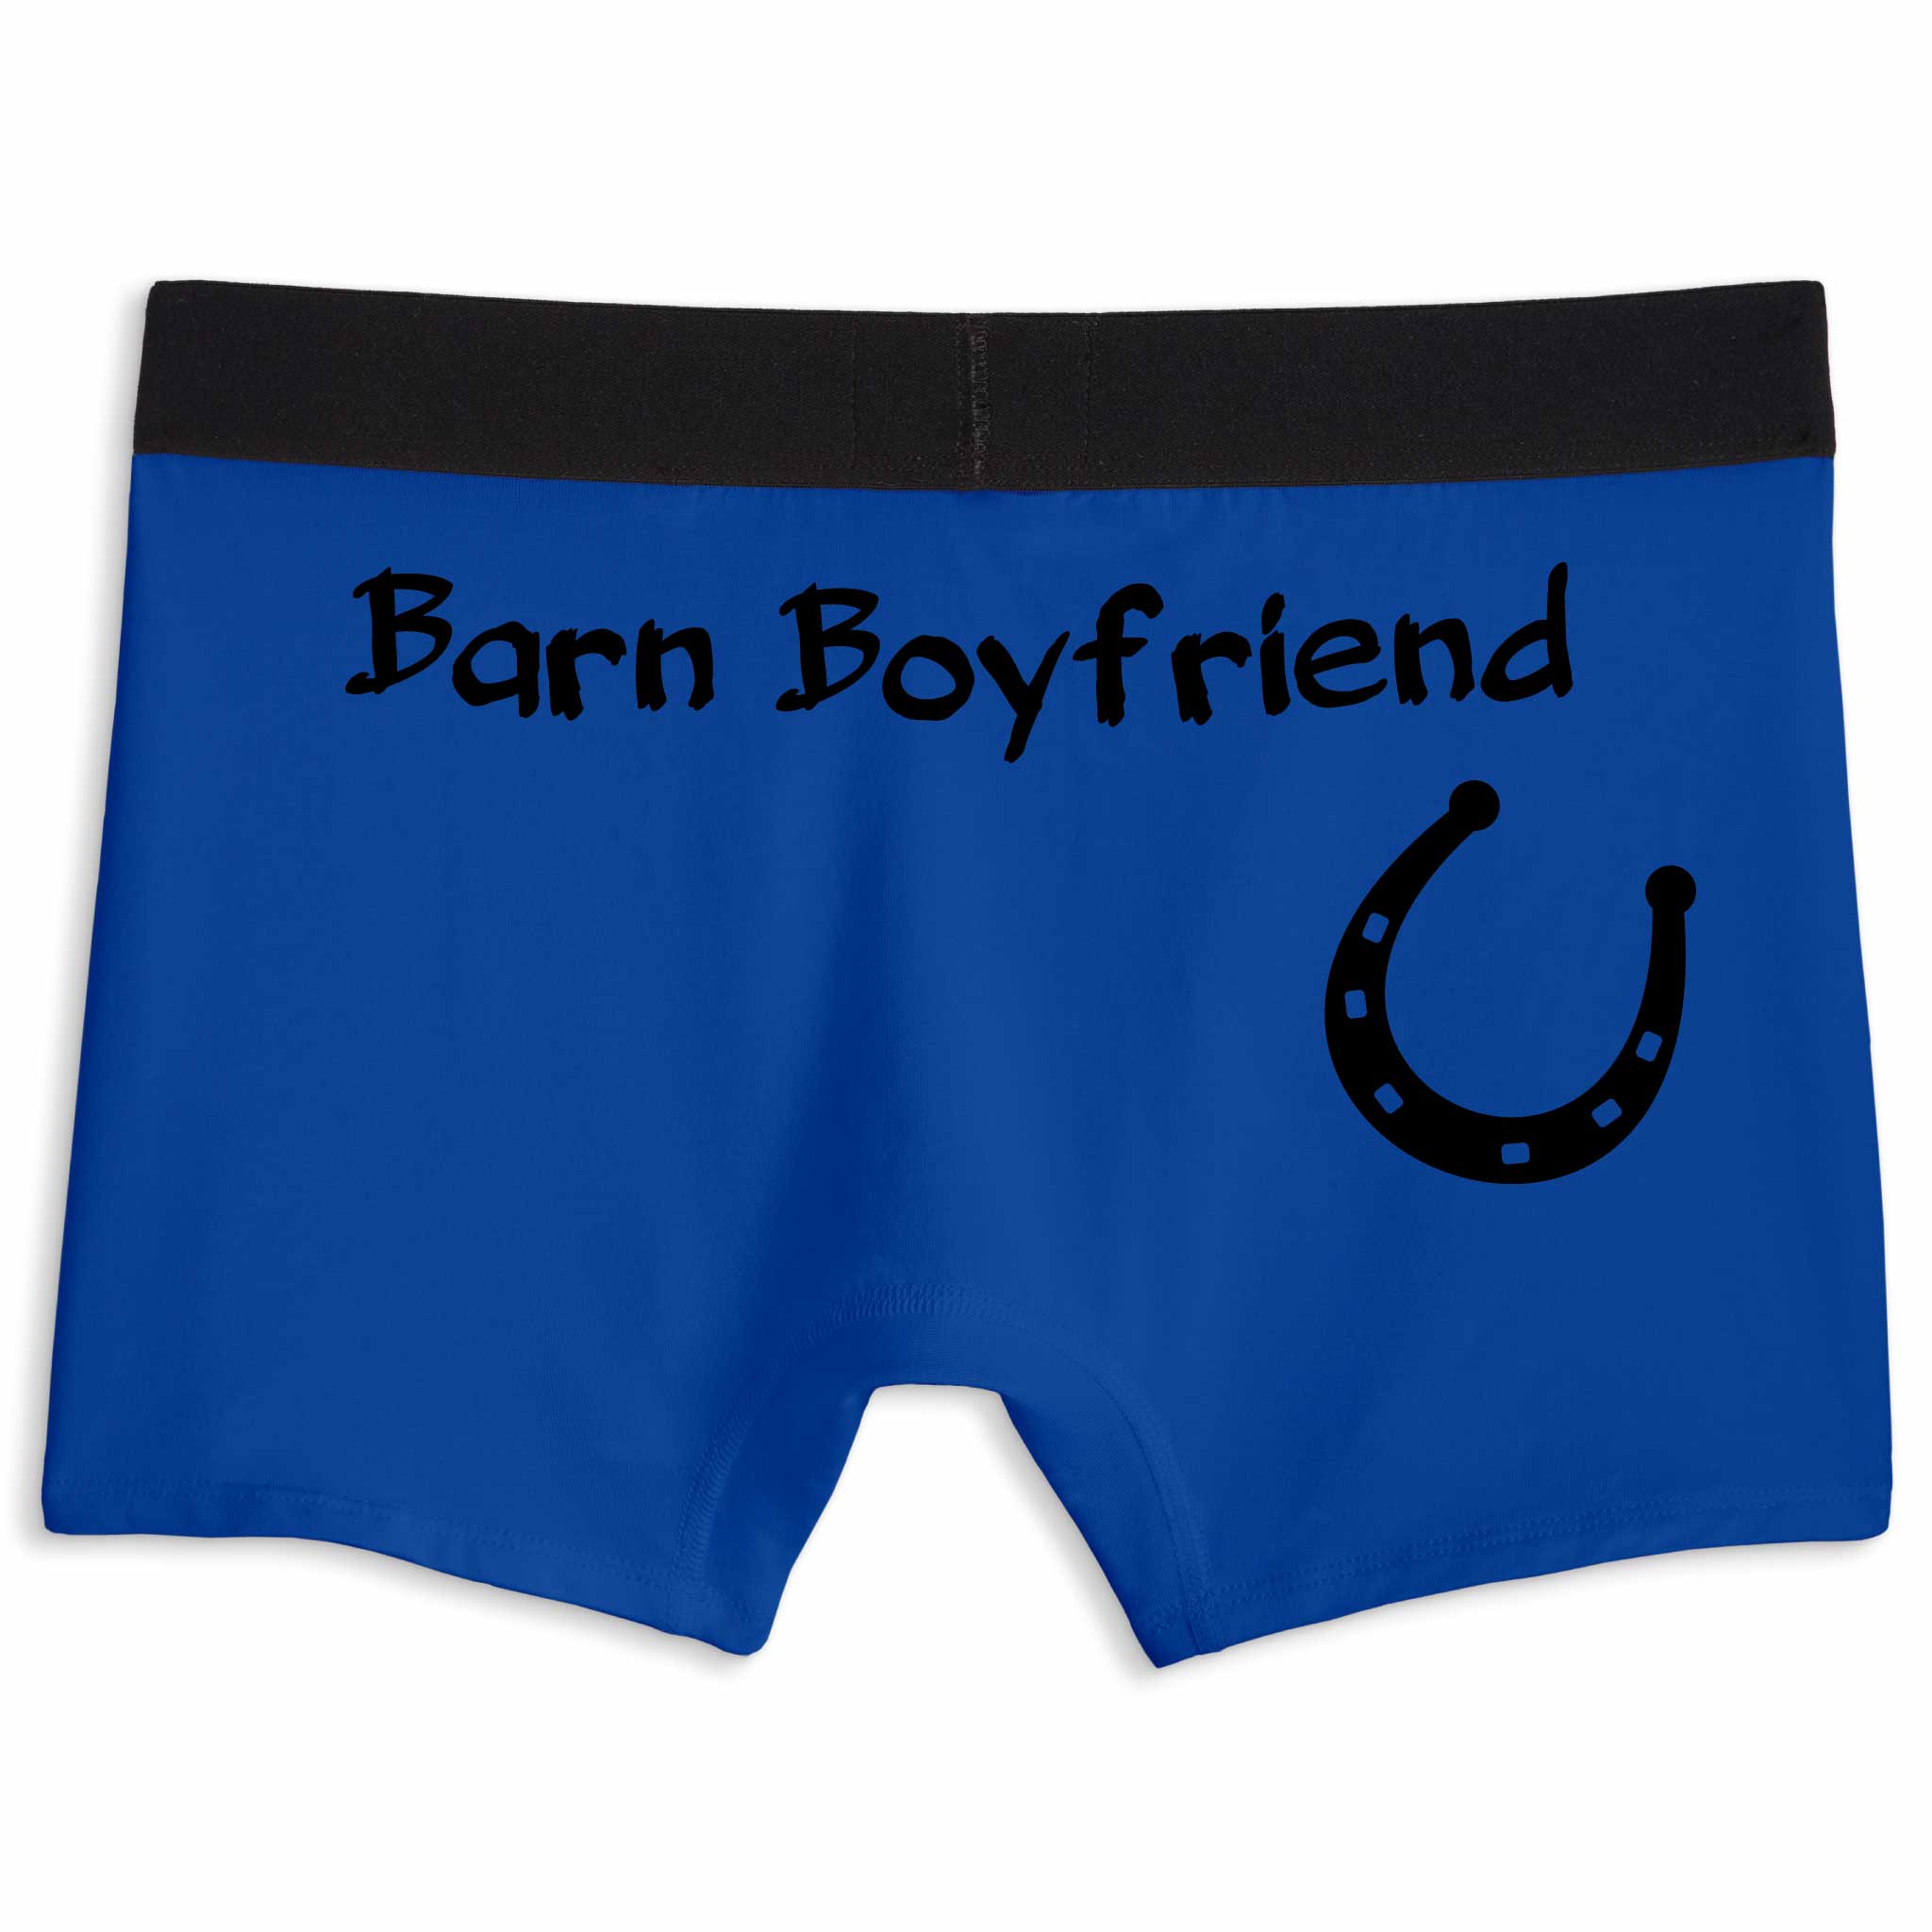 Barn boyfriend | Boxer briefs underwear